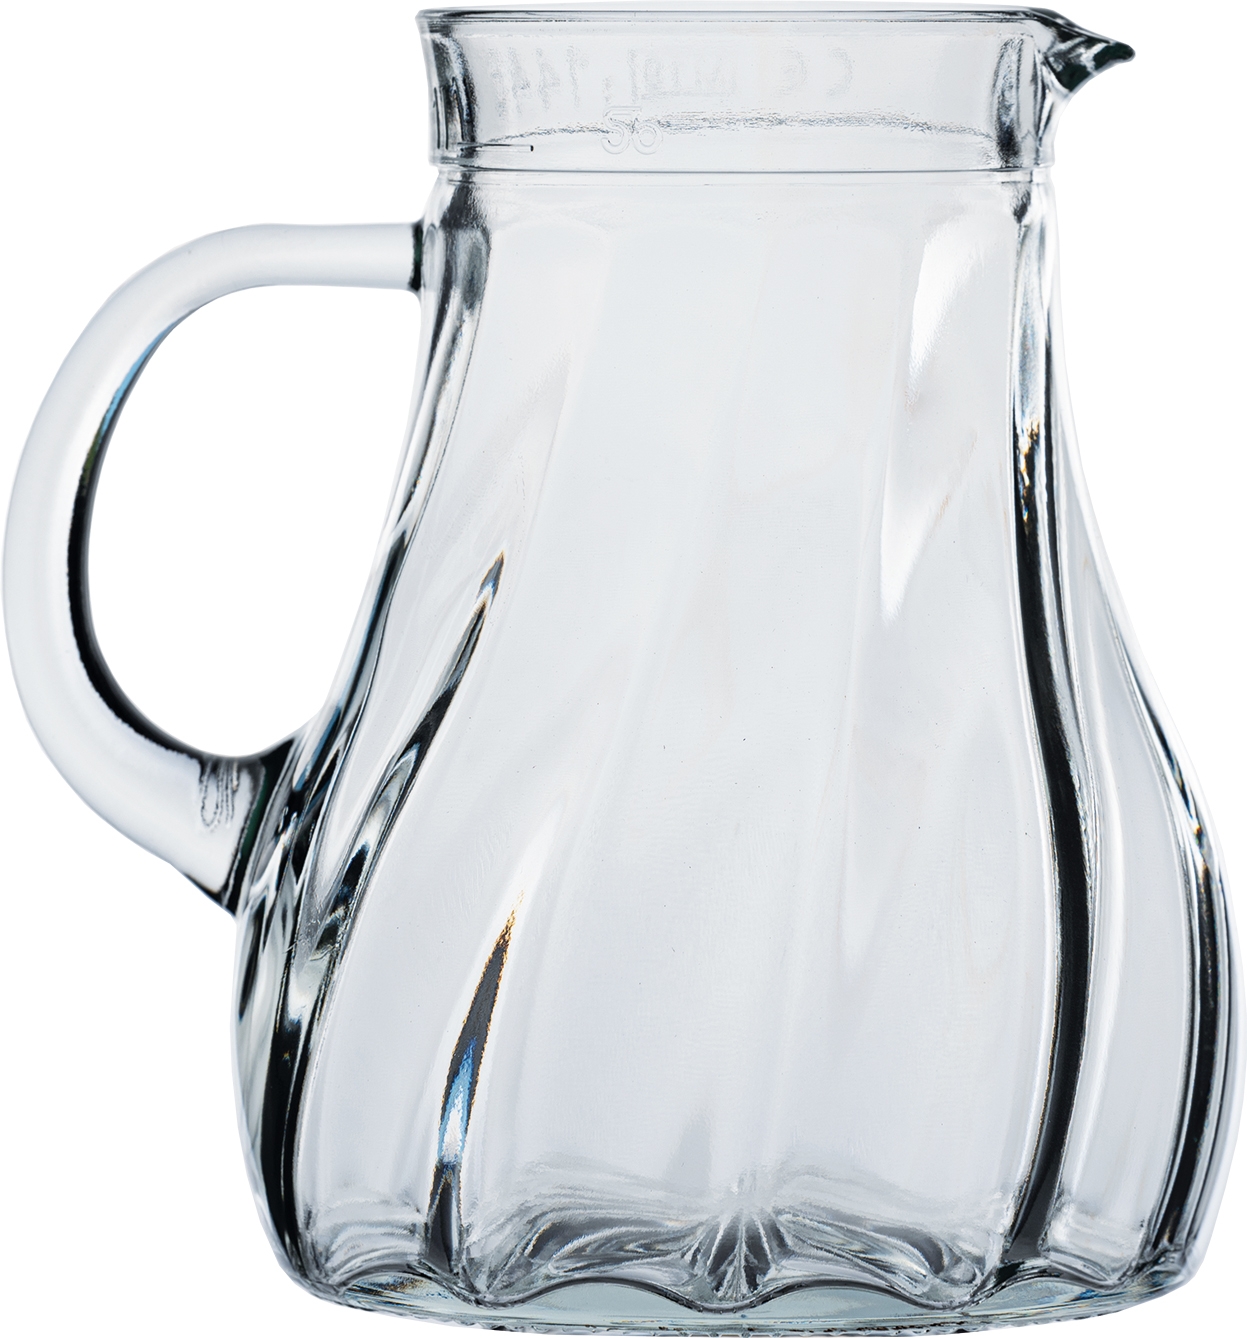 Stölzle-Oberglas Salzburg Krug mit Spiraloptik, 1.05 Liter, mit Füllstrich bei 1l, Glas, transparent, 1 Stück